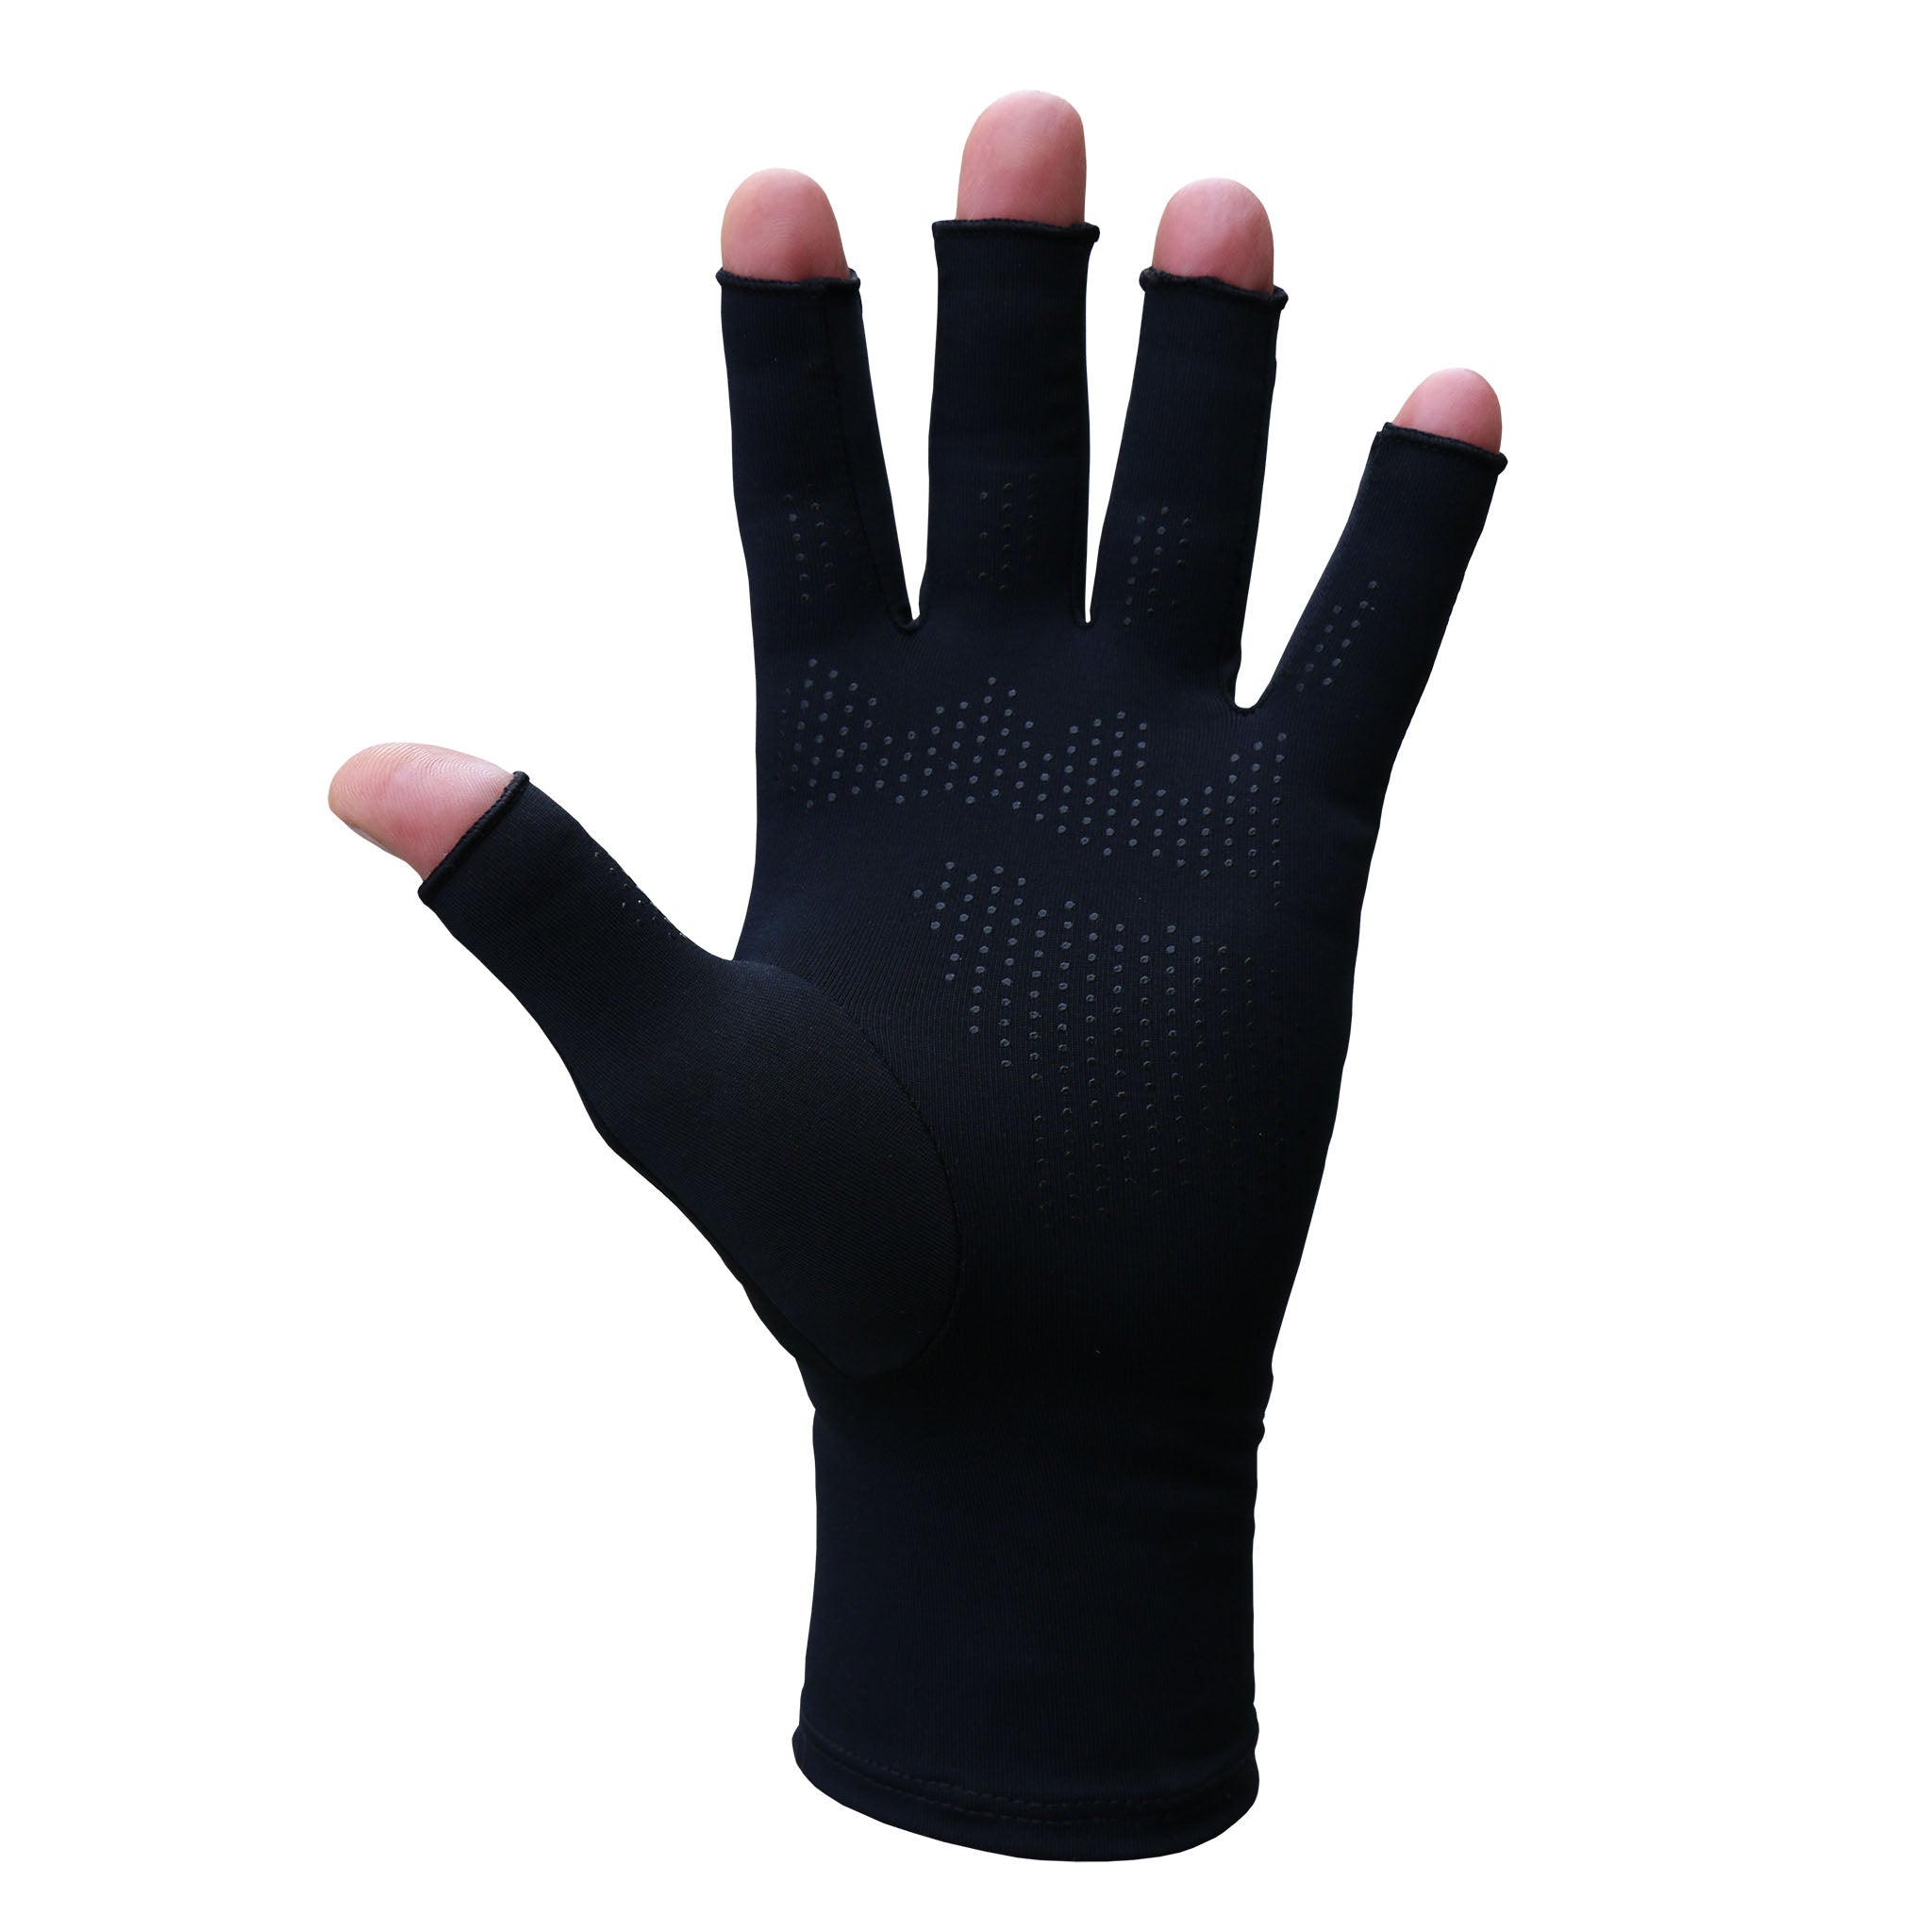 https://glovesfortherapy.com/cdn/shop/products/fingertip_grip_gloves_compression_GT.jpg?v=1602386643